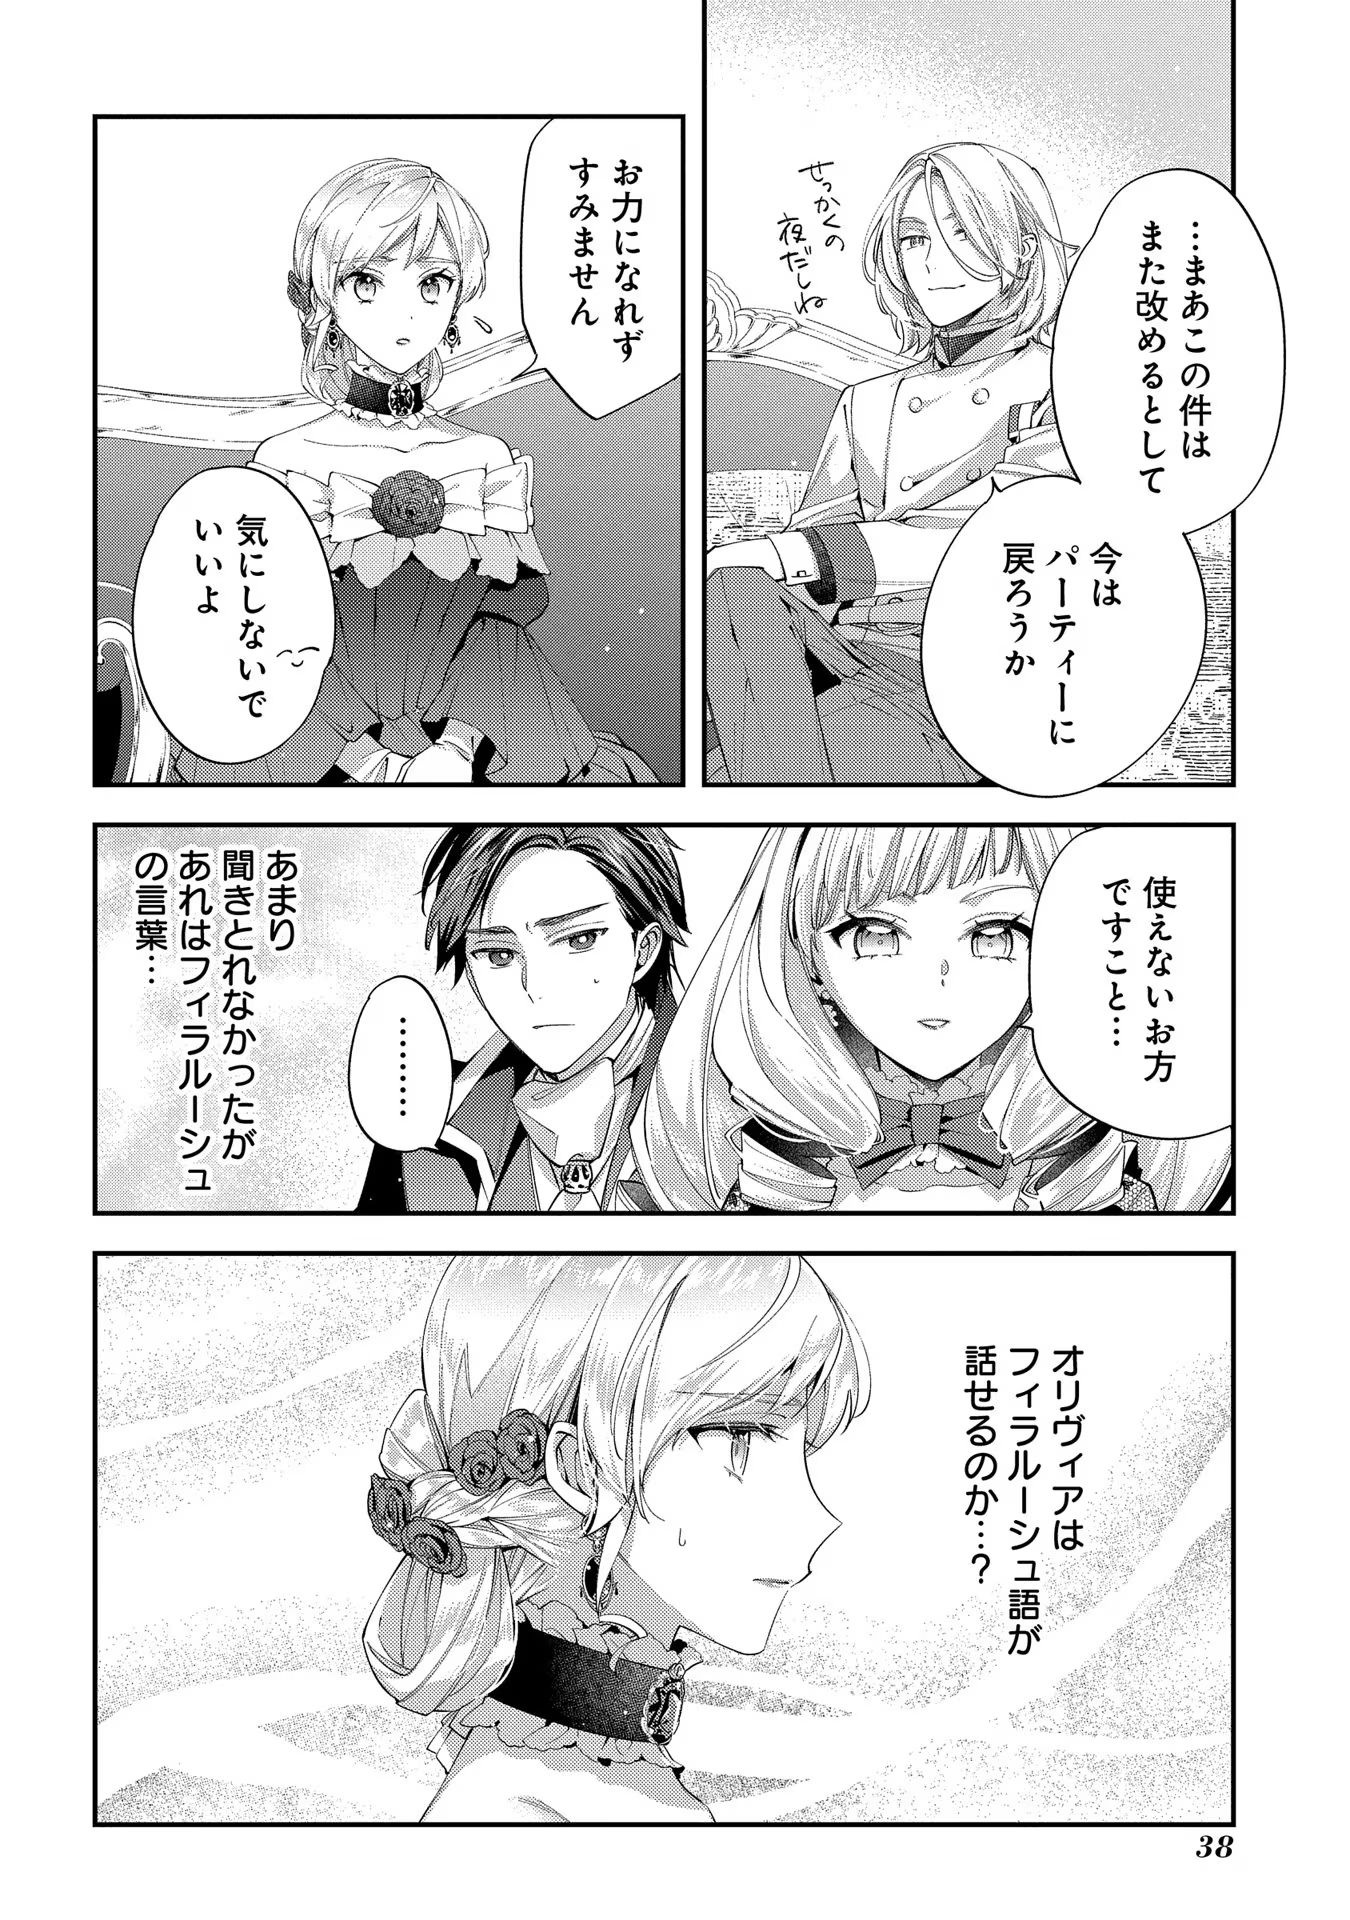 Outaishi ni Konyaku Hakisareta no de, Mou Baka no Furi wa Yameyou to Omoimasu - Chapter 12 - Page 2